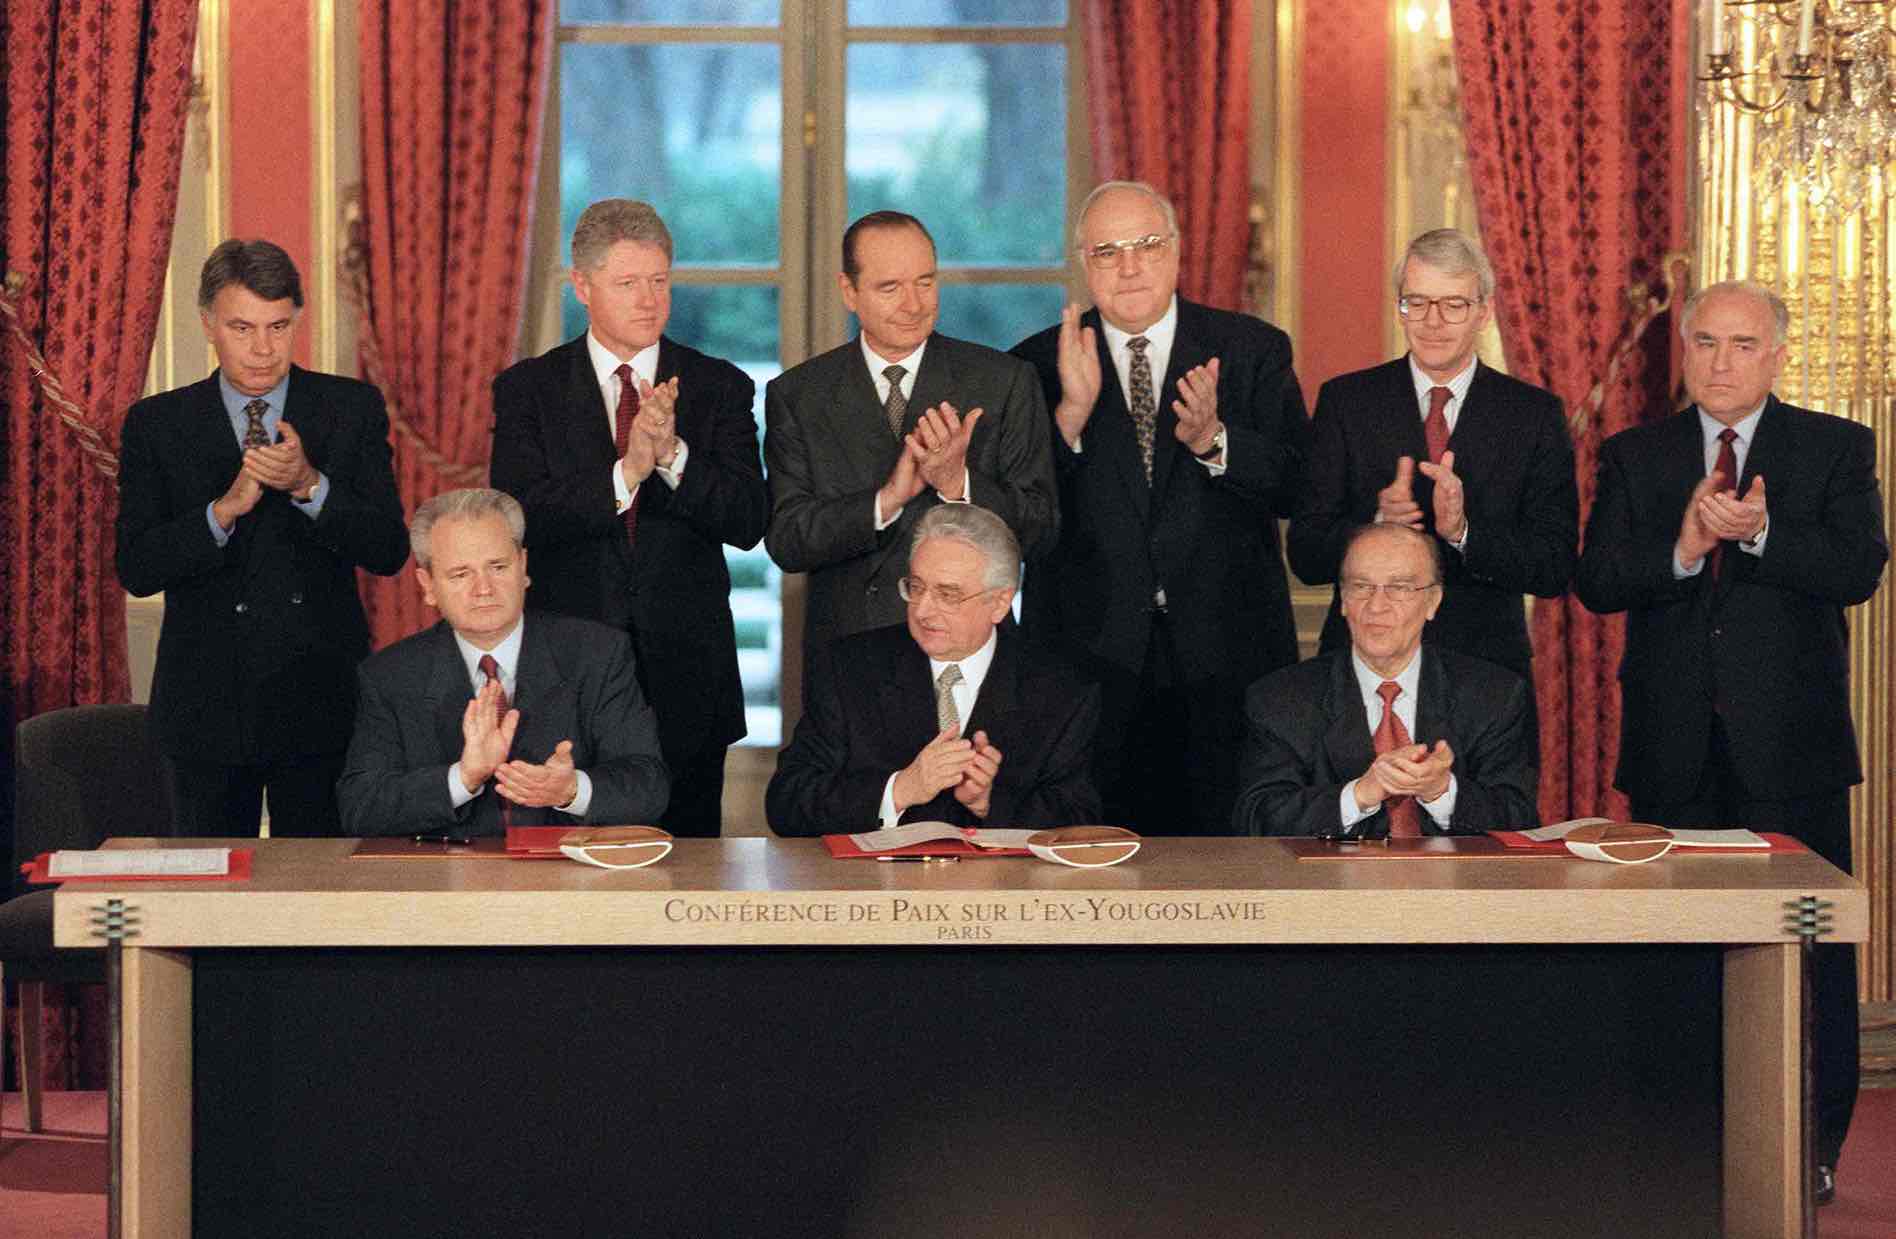 Dejtonski sporazum, posle tronedeljnih pregovora, parafirali su tadašnji predsednici Srbije Slobodan Milošević, Hrvatske Franjo Tuđman i BiH Alija Izetbegović